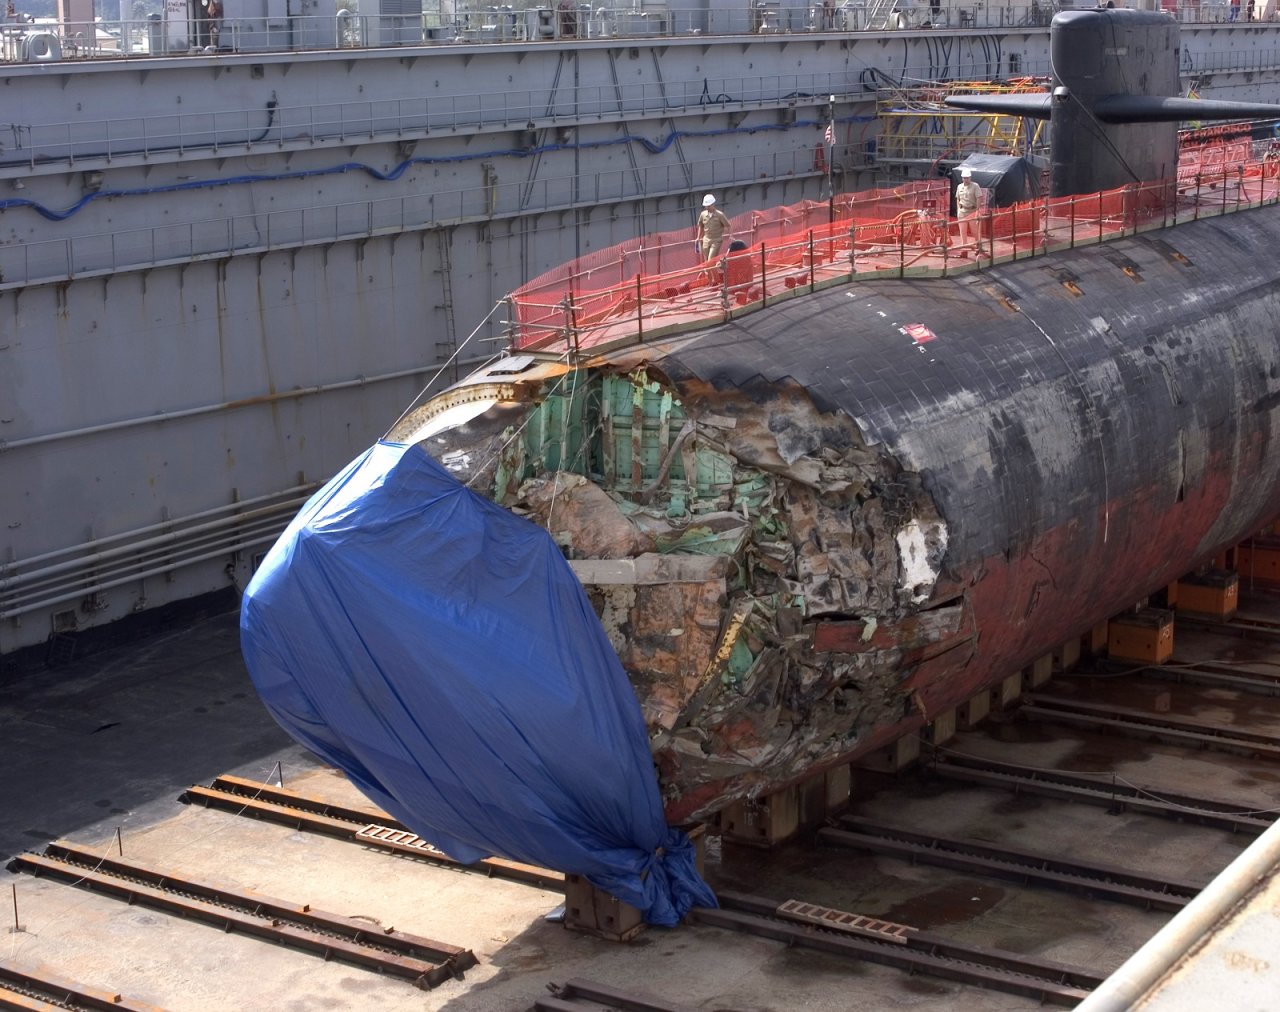 typhoon submarine in dry dock